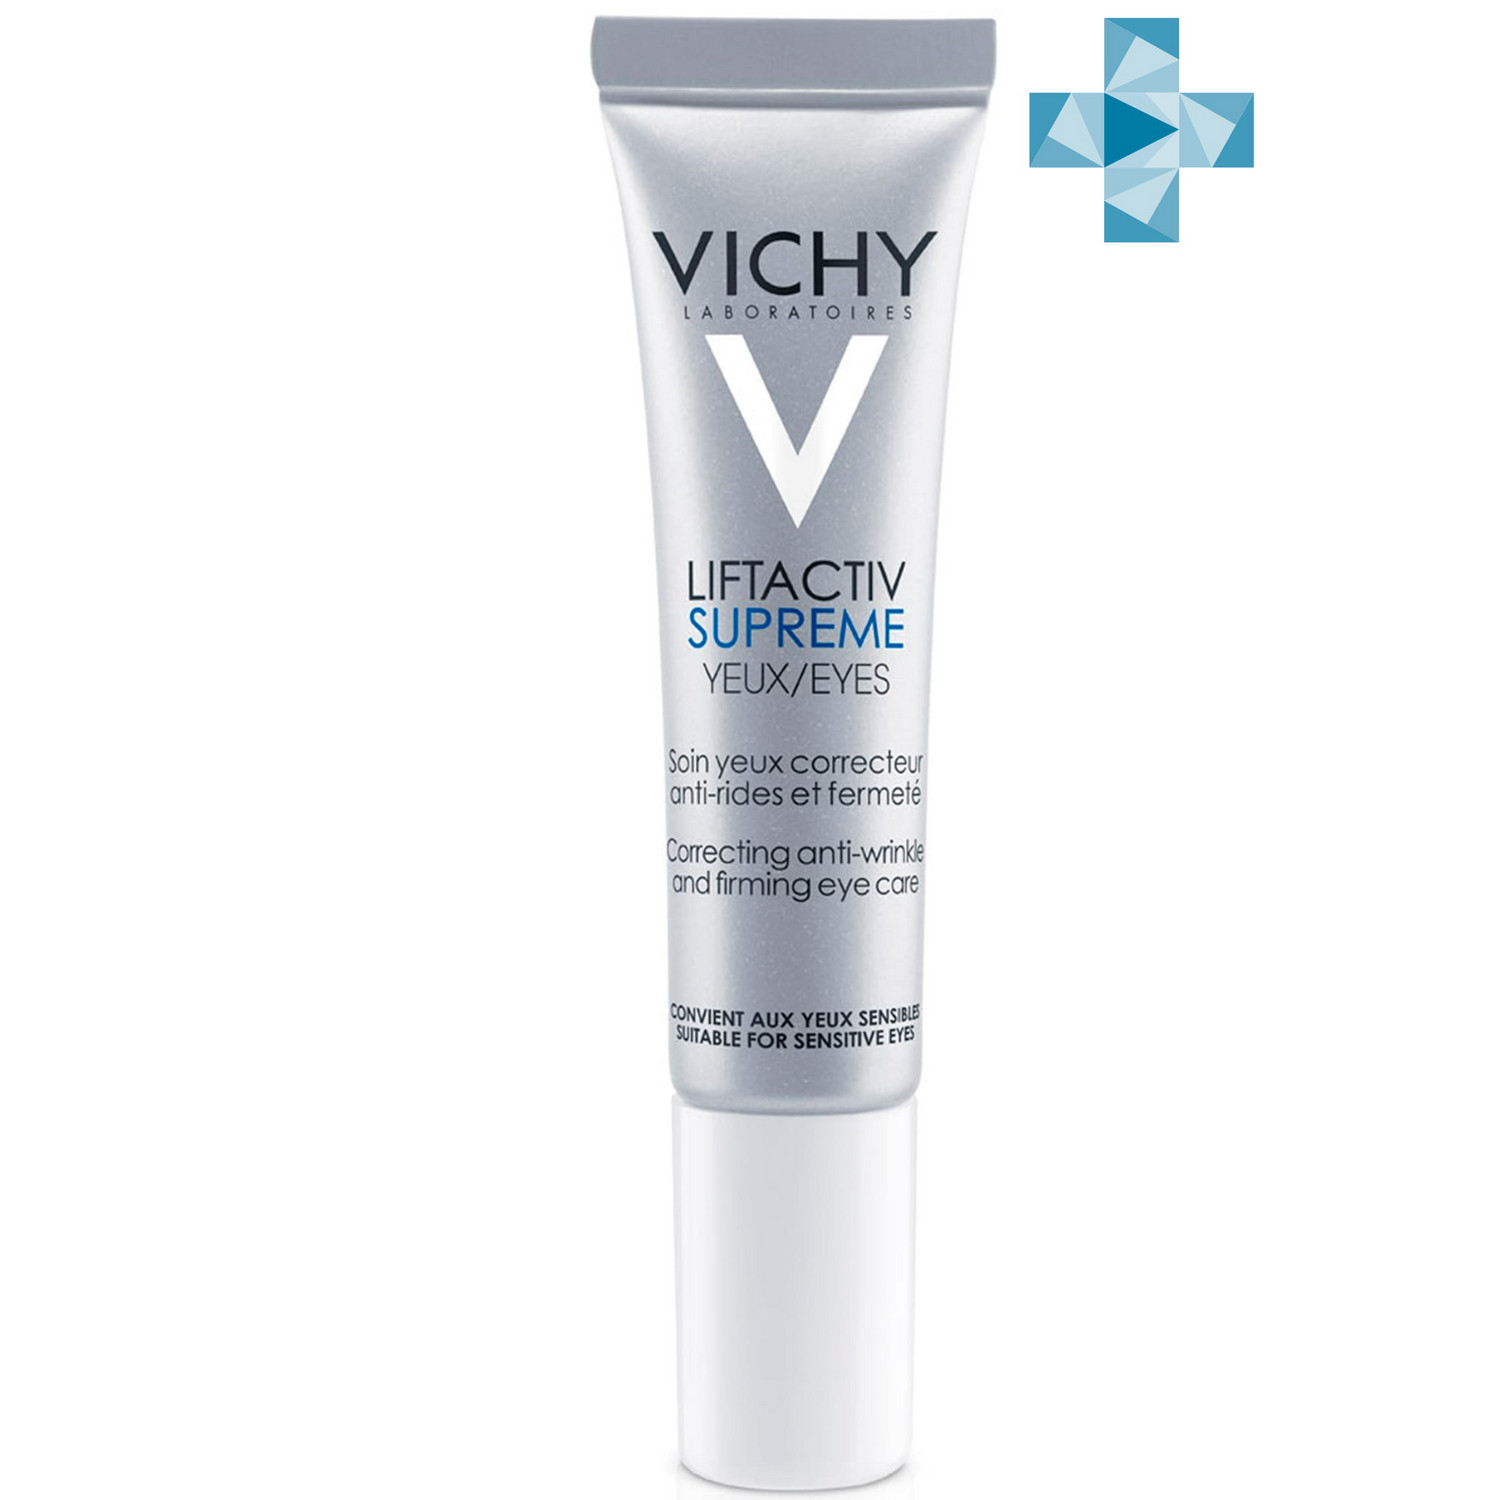 Купить Vichy Supreme Антивозрастной крем-уход для кожи вокруг глаз, 15 мл (Vichy, Liftactiv), Франция